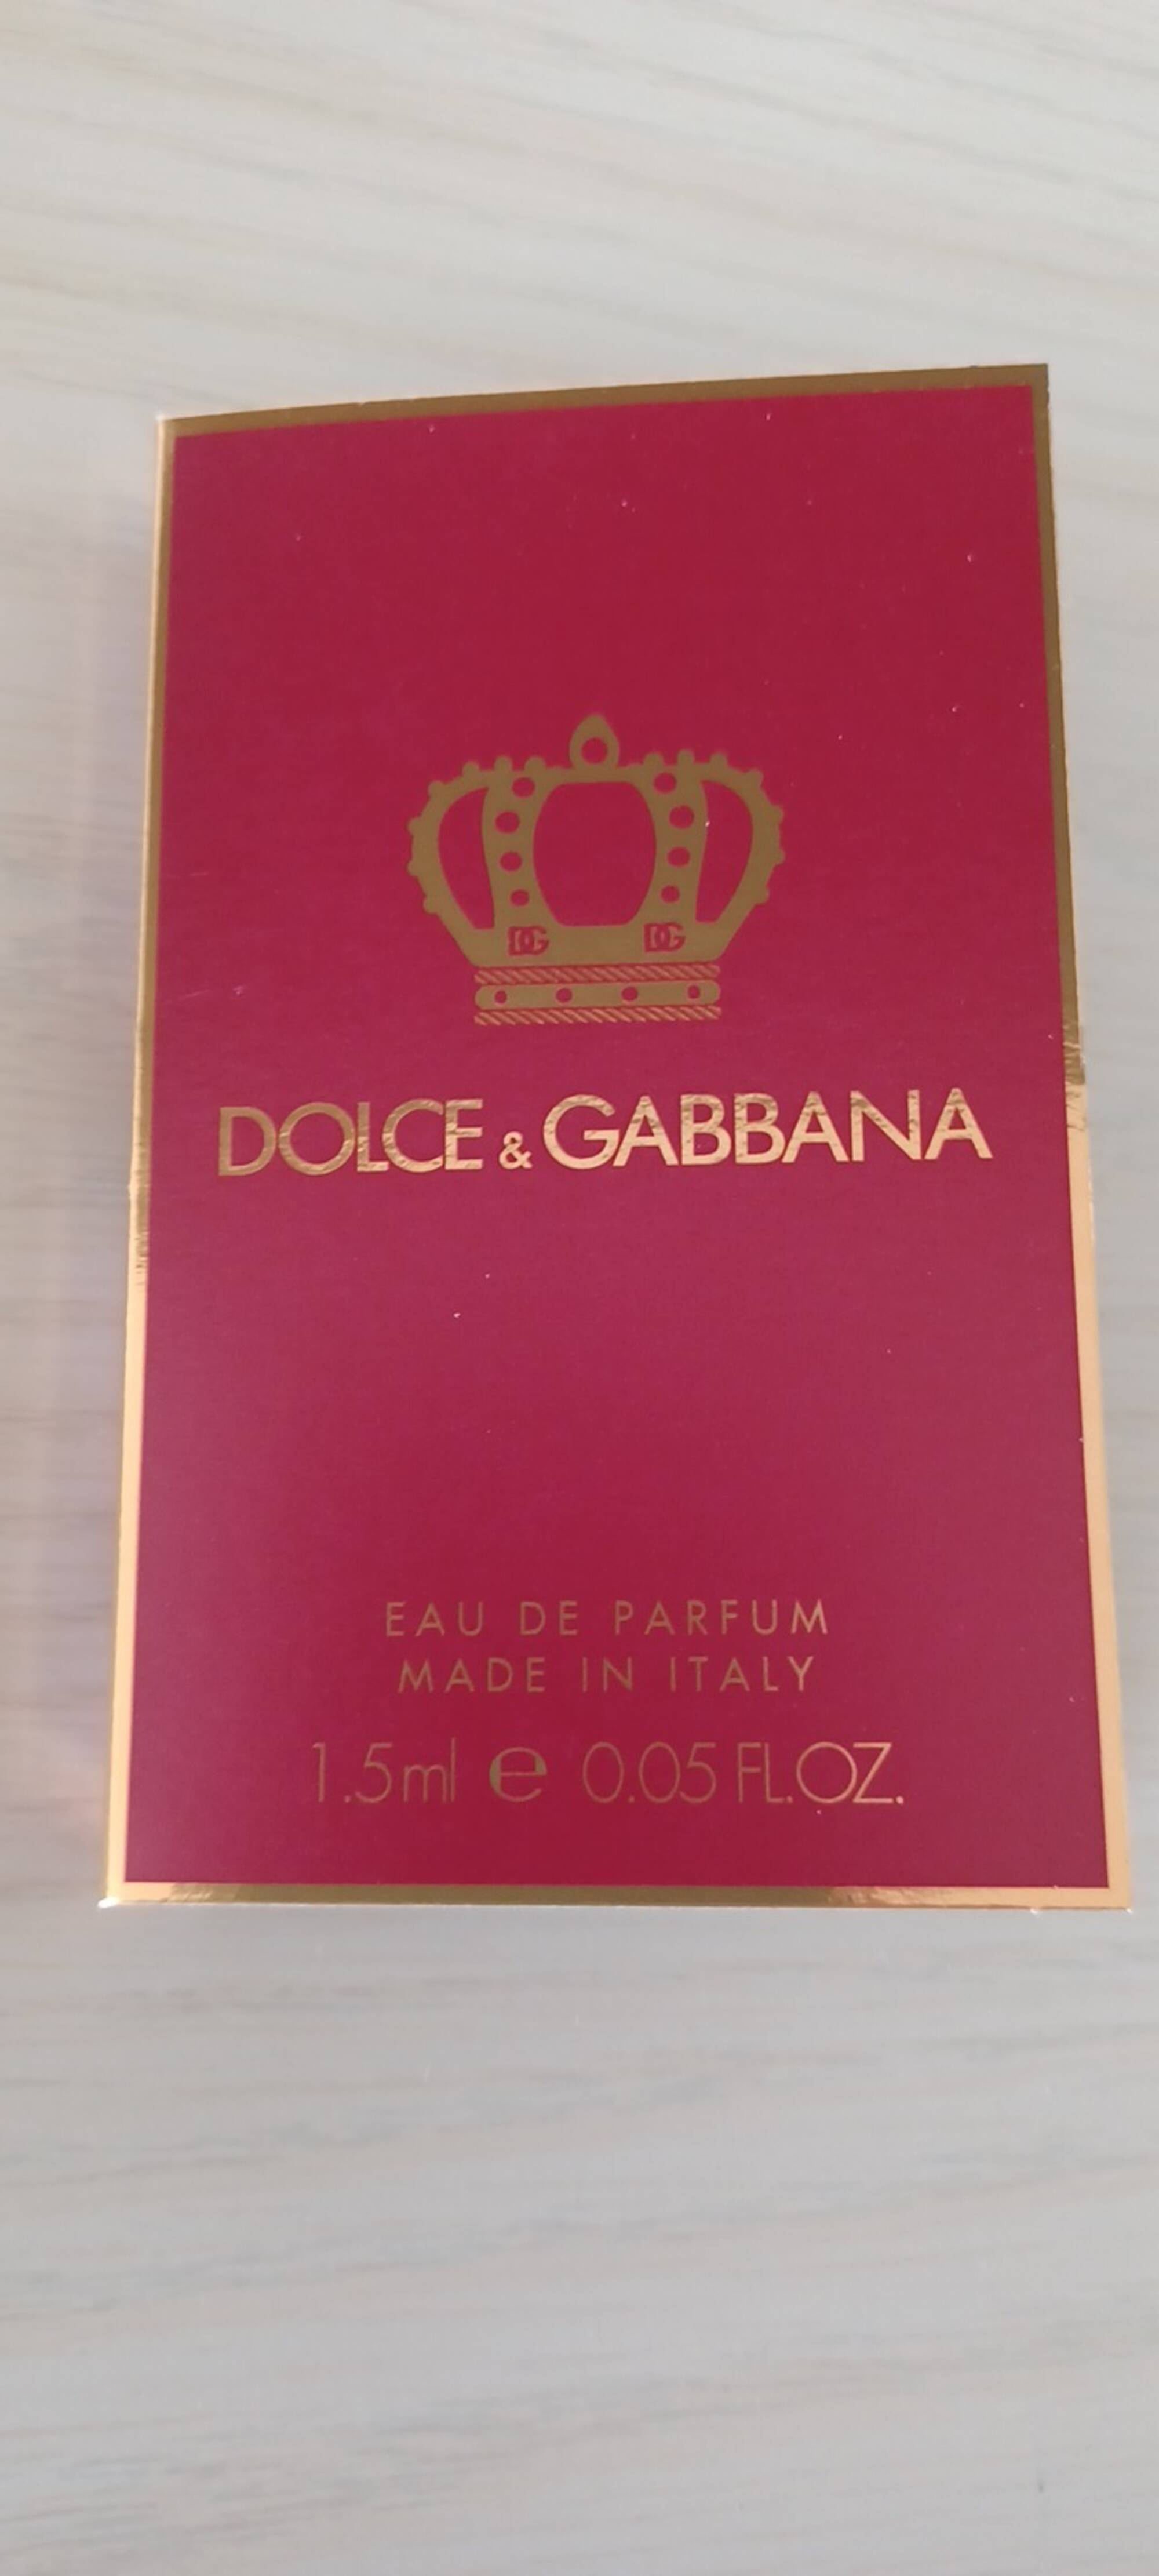 DOLCE & GABBANA - Eau de parfum